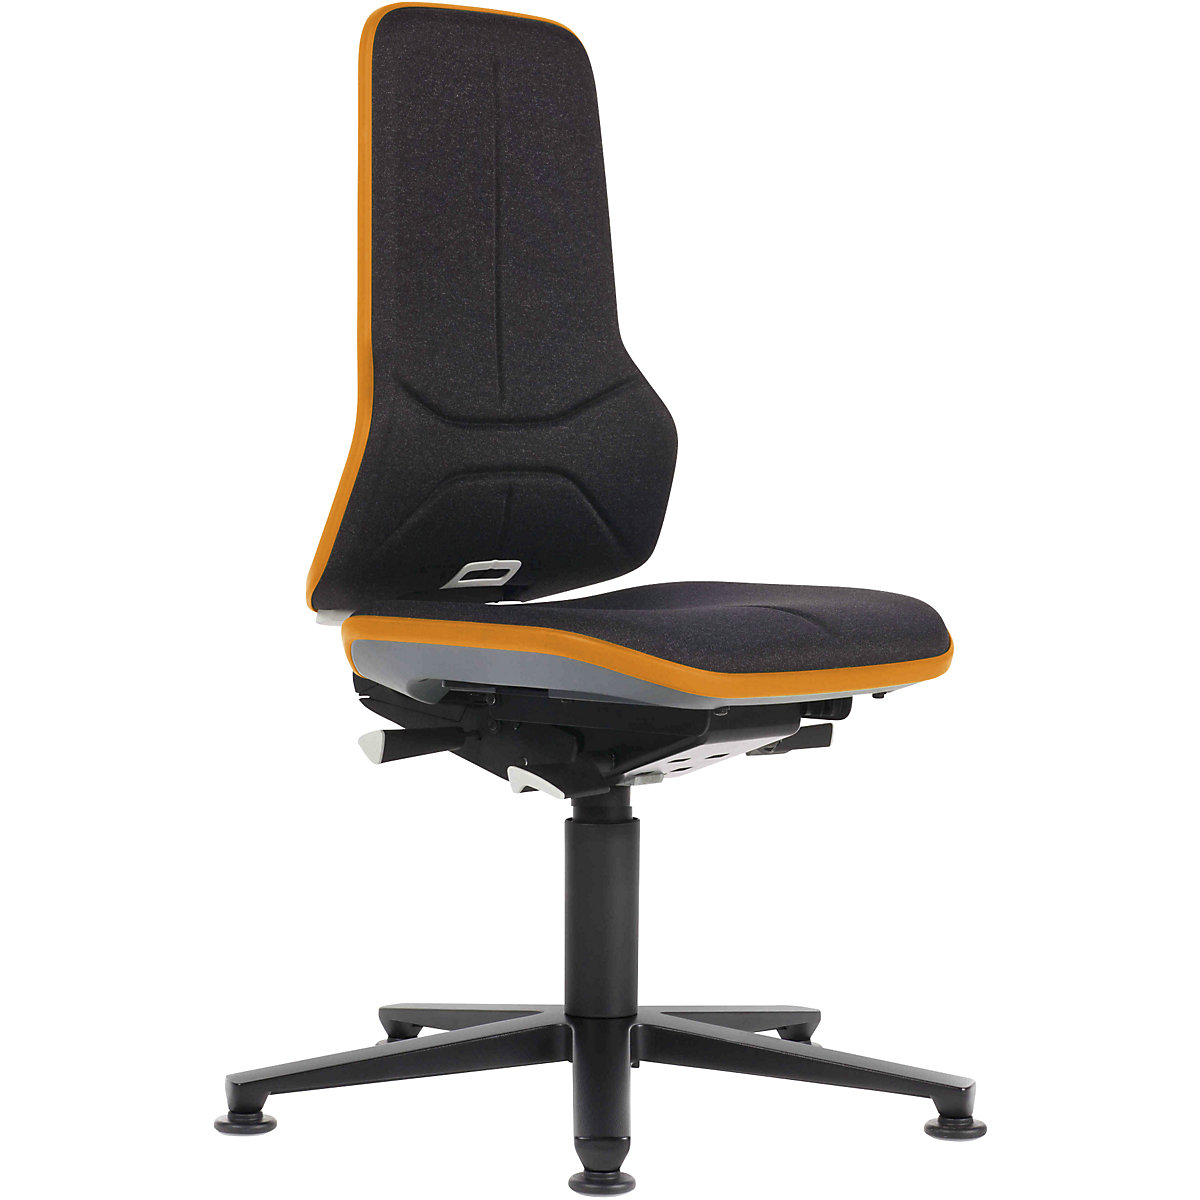 Pracovní otočná židle NEON, patky – bimos, permanentní kontakt, textil, oranžový flexibilní pás-12